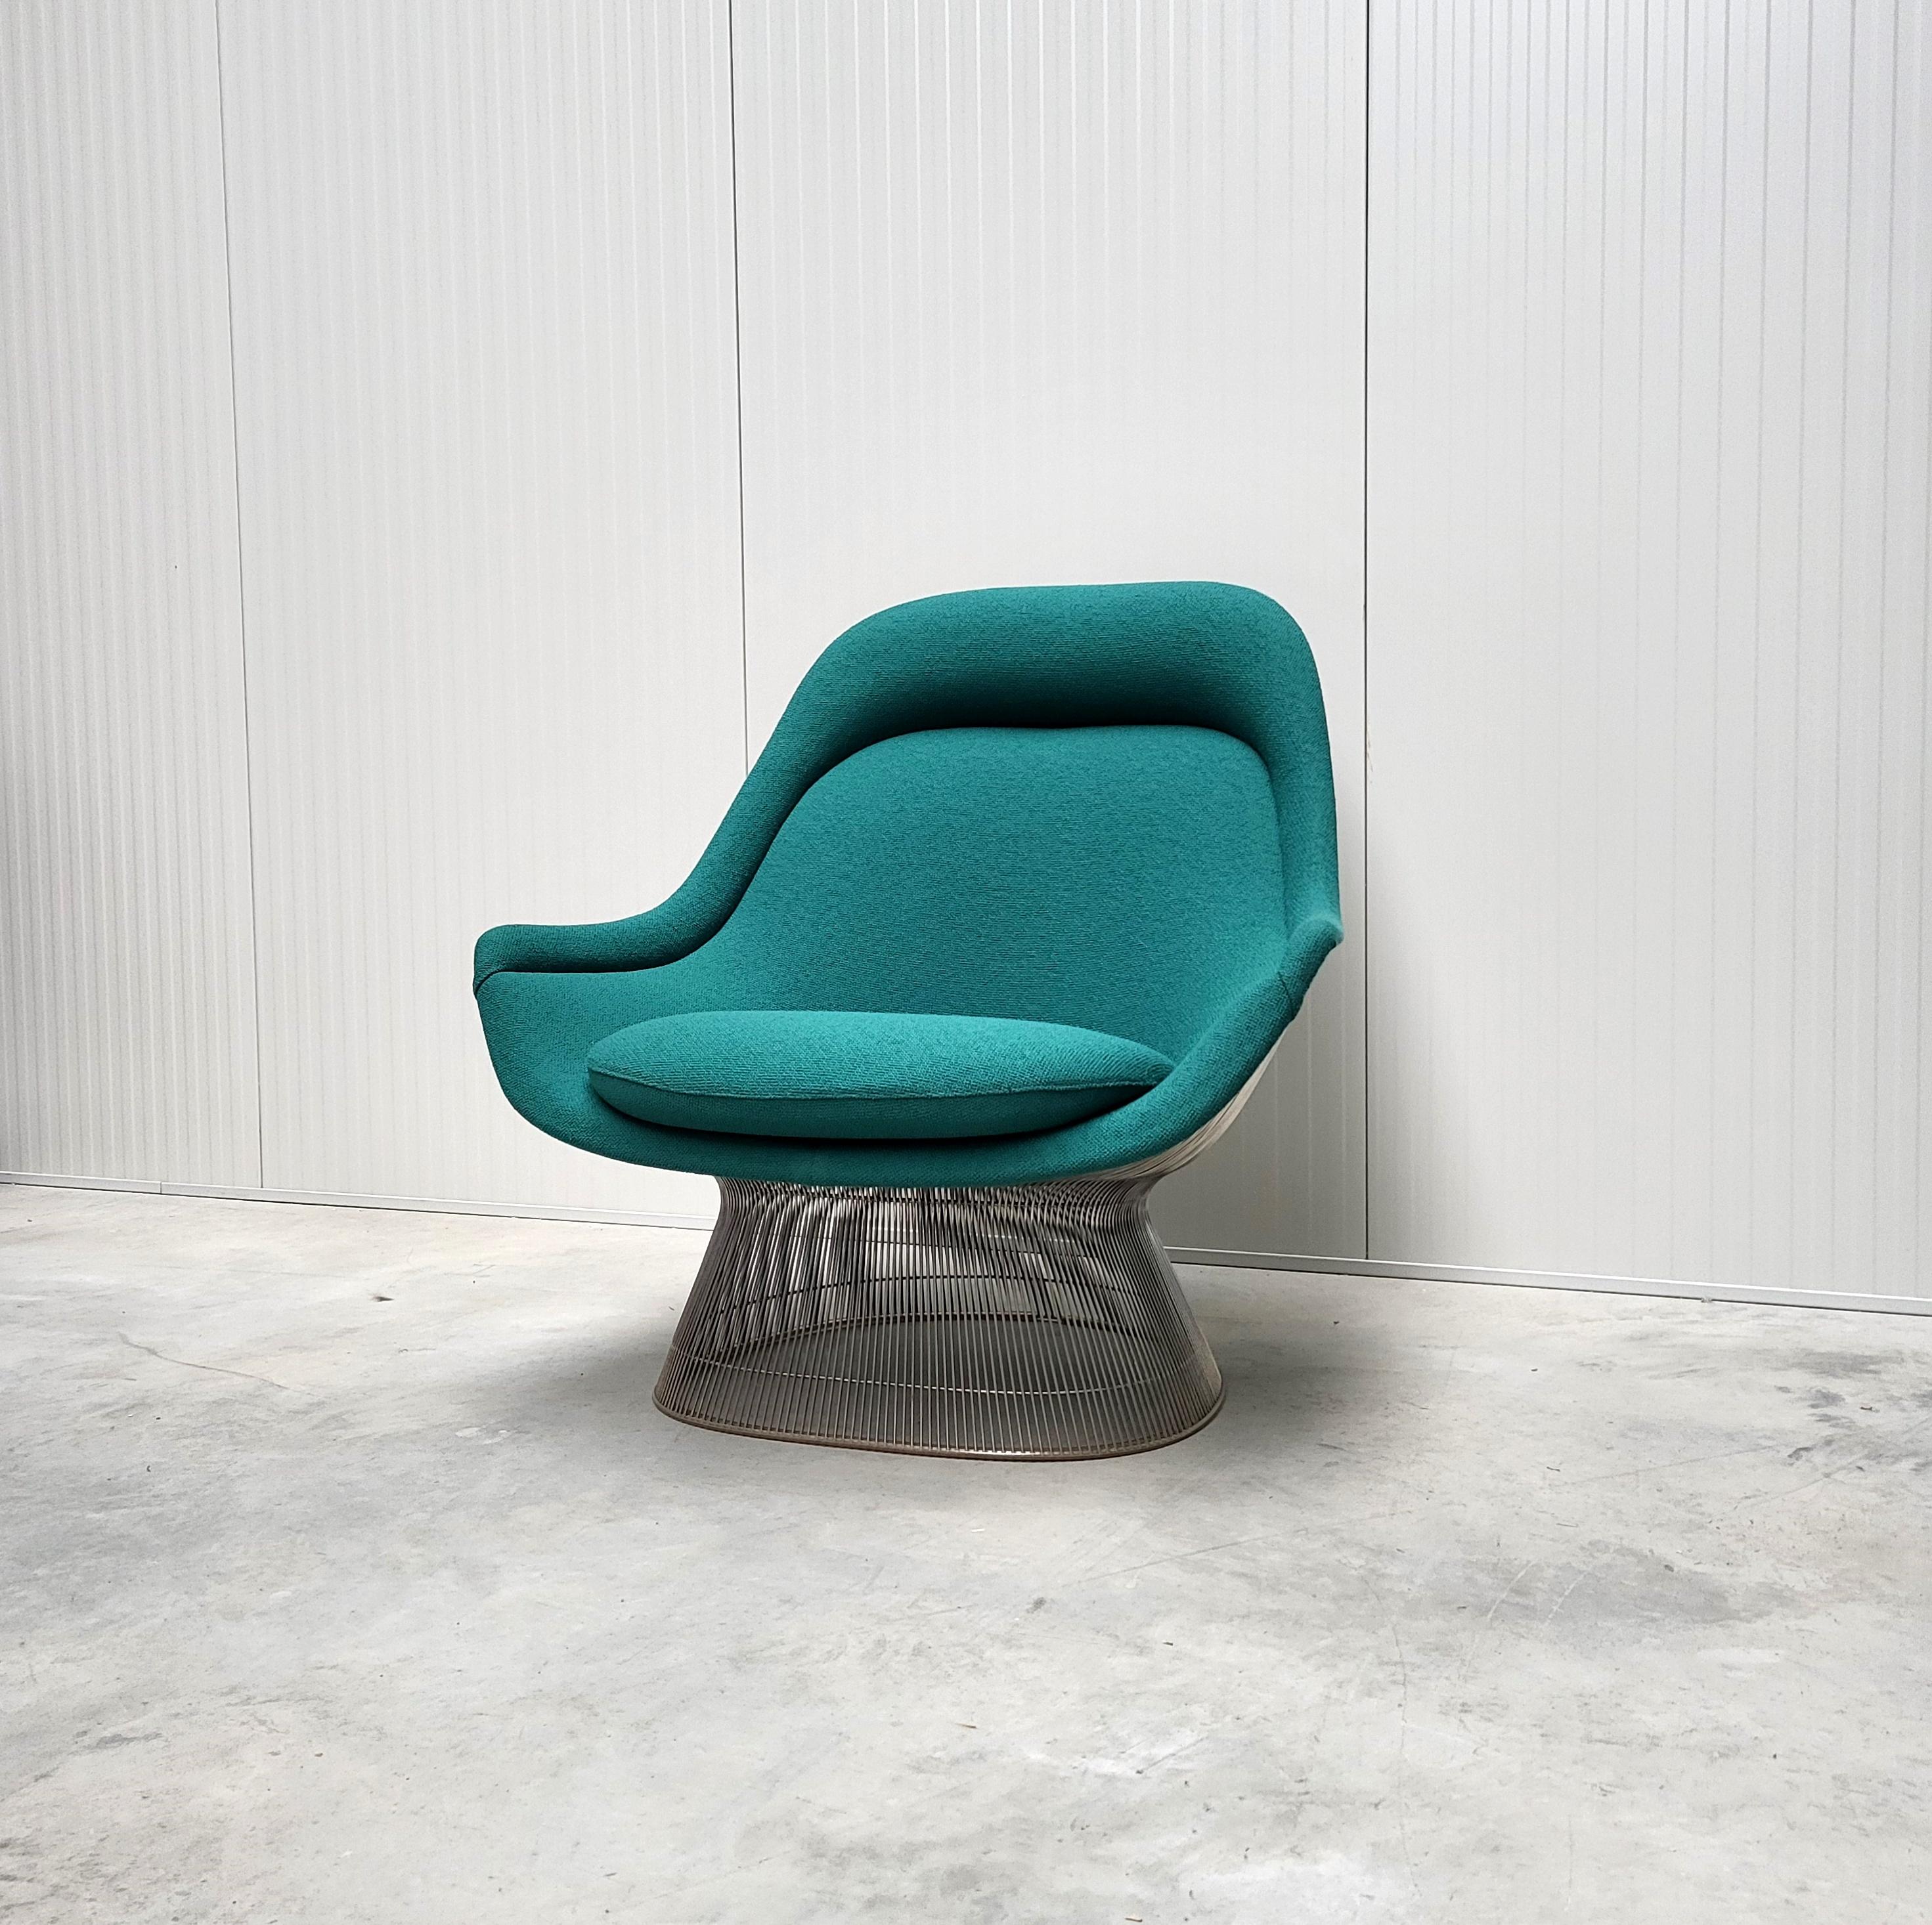 Früher Easy Lounge Stuhl von Warren Platner für Knoll. 

Der bahnbrechende Easy Chair wurde in den 1960er Jahren von Warren Platner entworfen und in den frühen 1980er Jahren von Knoll produziert. Dieser Klassiker aus der Mitte des Jahrhunderts